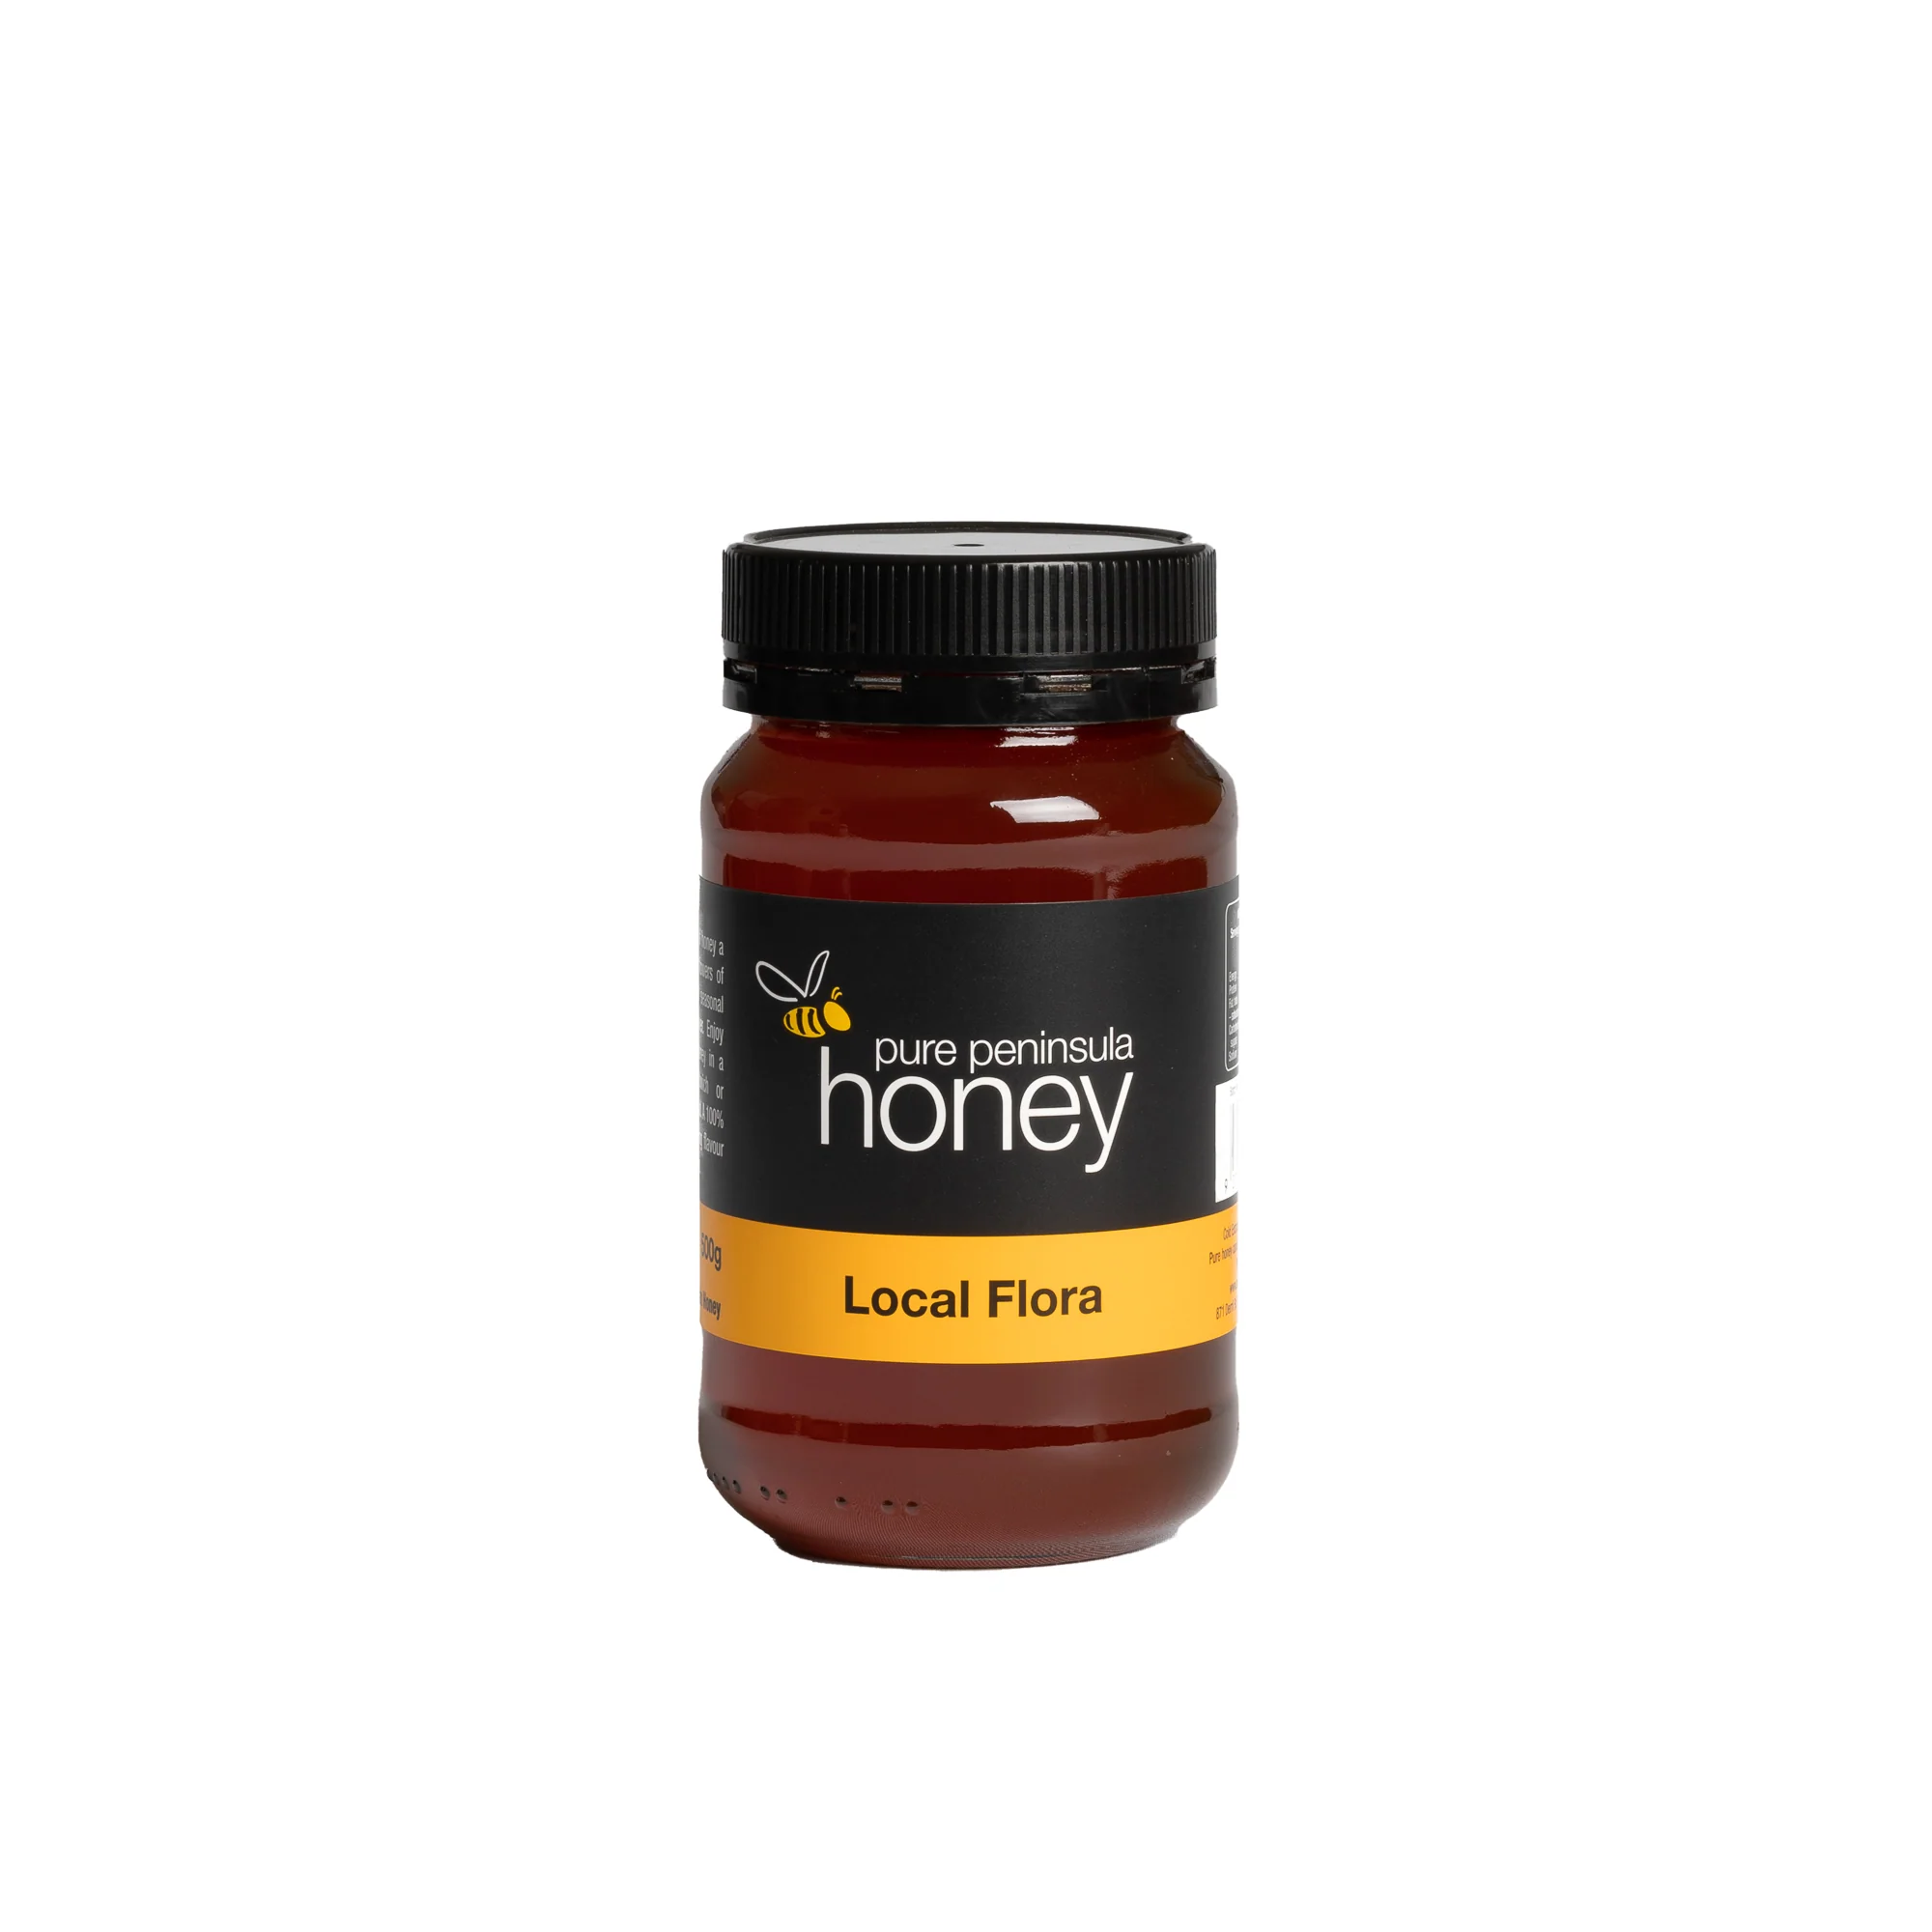 Pure Peninsula Honey